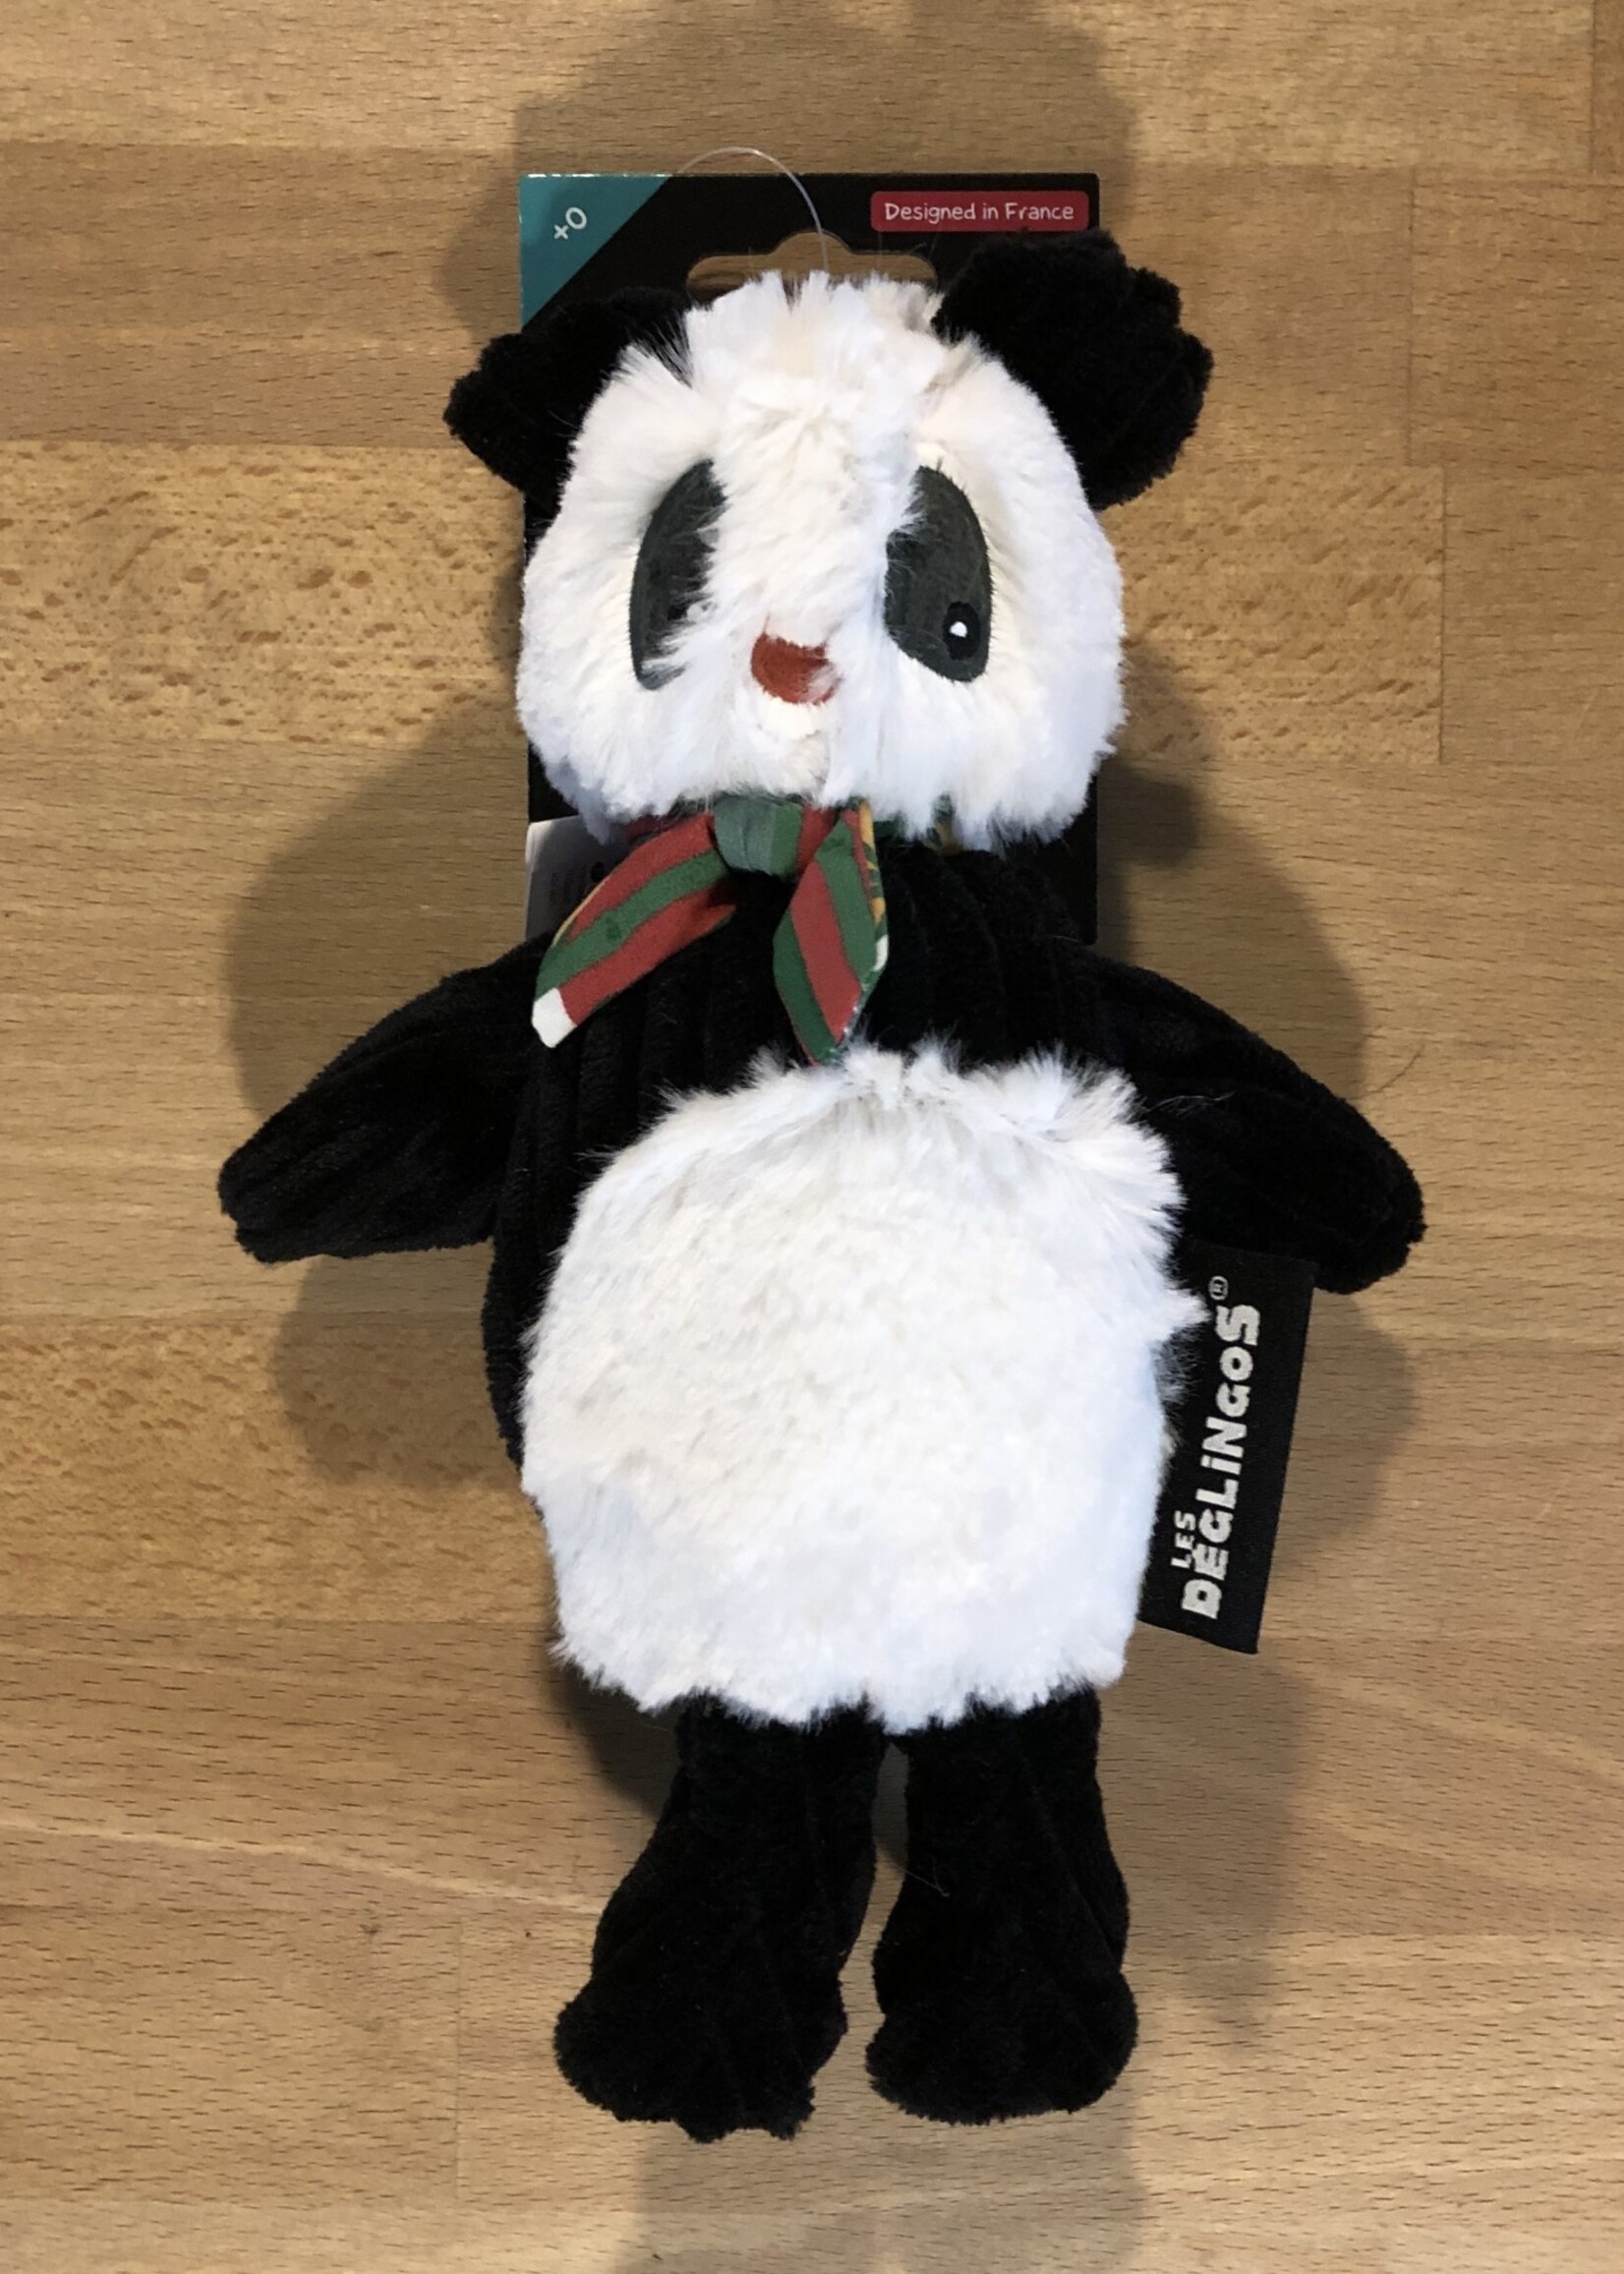 Stuffy - Sm Simply Panda 8” long